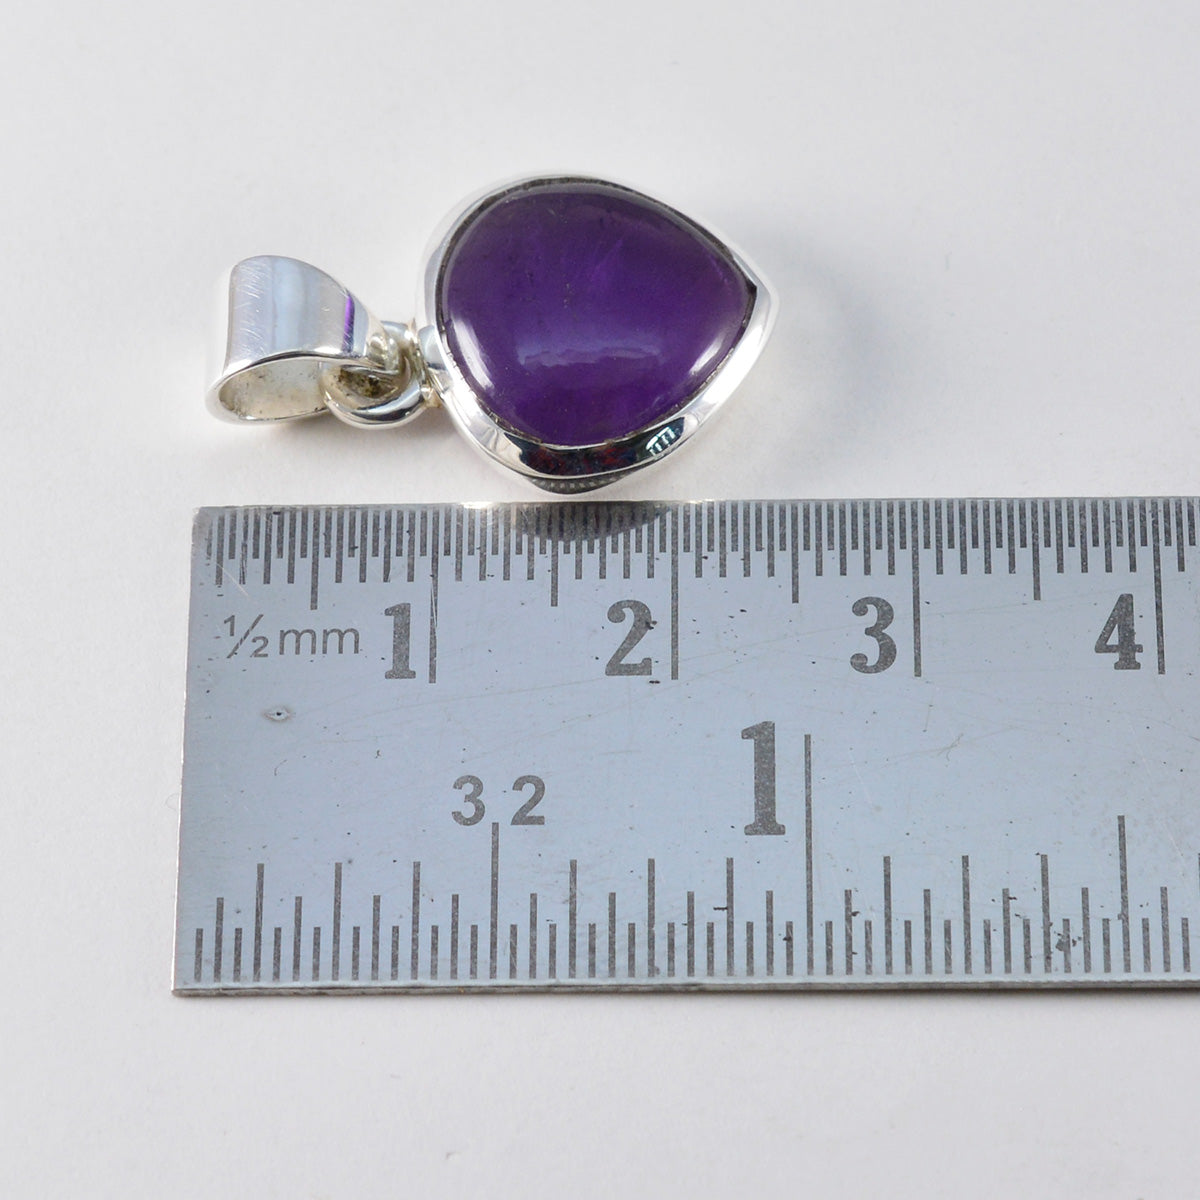 Riyo pierres précieuses gracieuses coeur cabochon violet améthyste pendentif en argent massif cadeau pour mariage